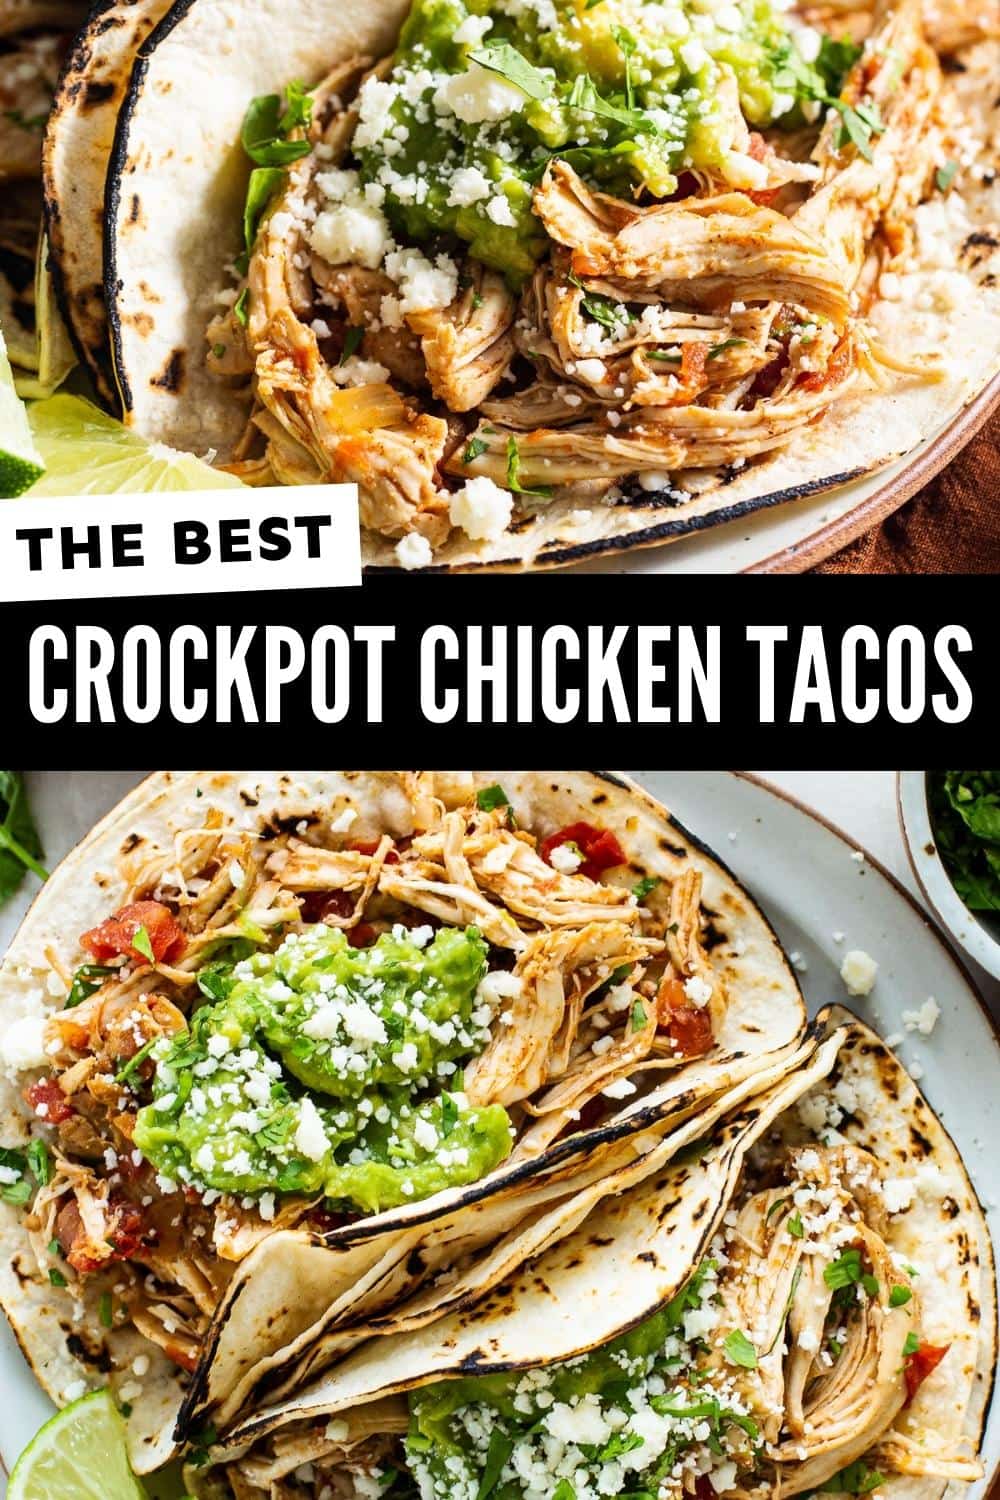 Crockpot Chicken Tacos - Isabel Eats